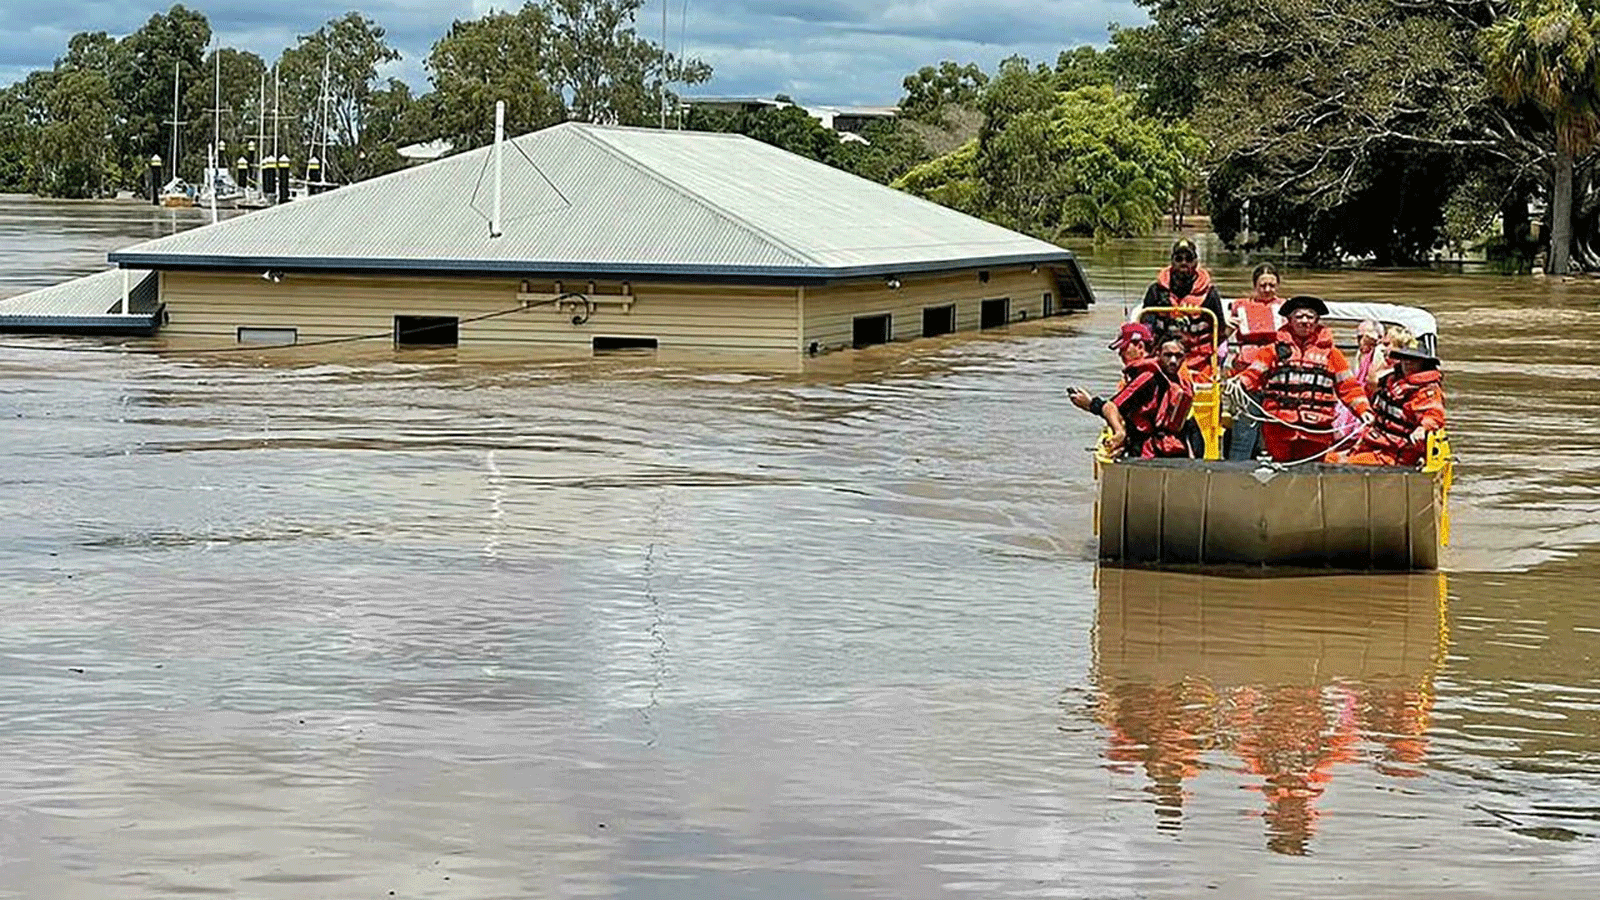  الفيضانات تغمر المناطق في جميع أنحاء ولايتي كوينزلاند ونيو ساوث ويلز